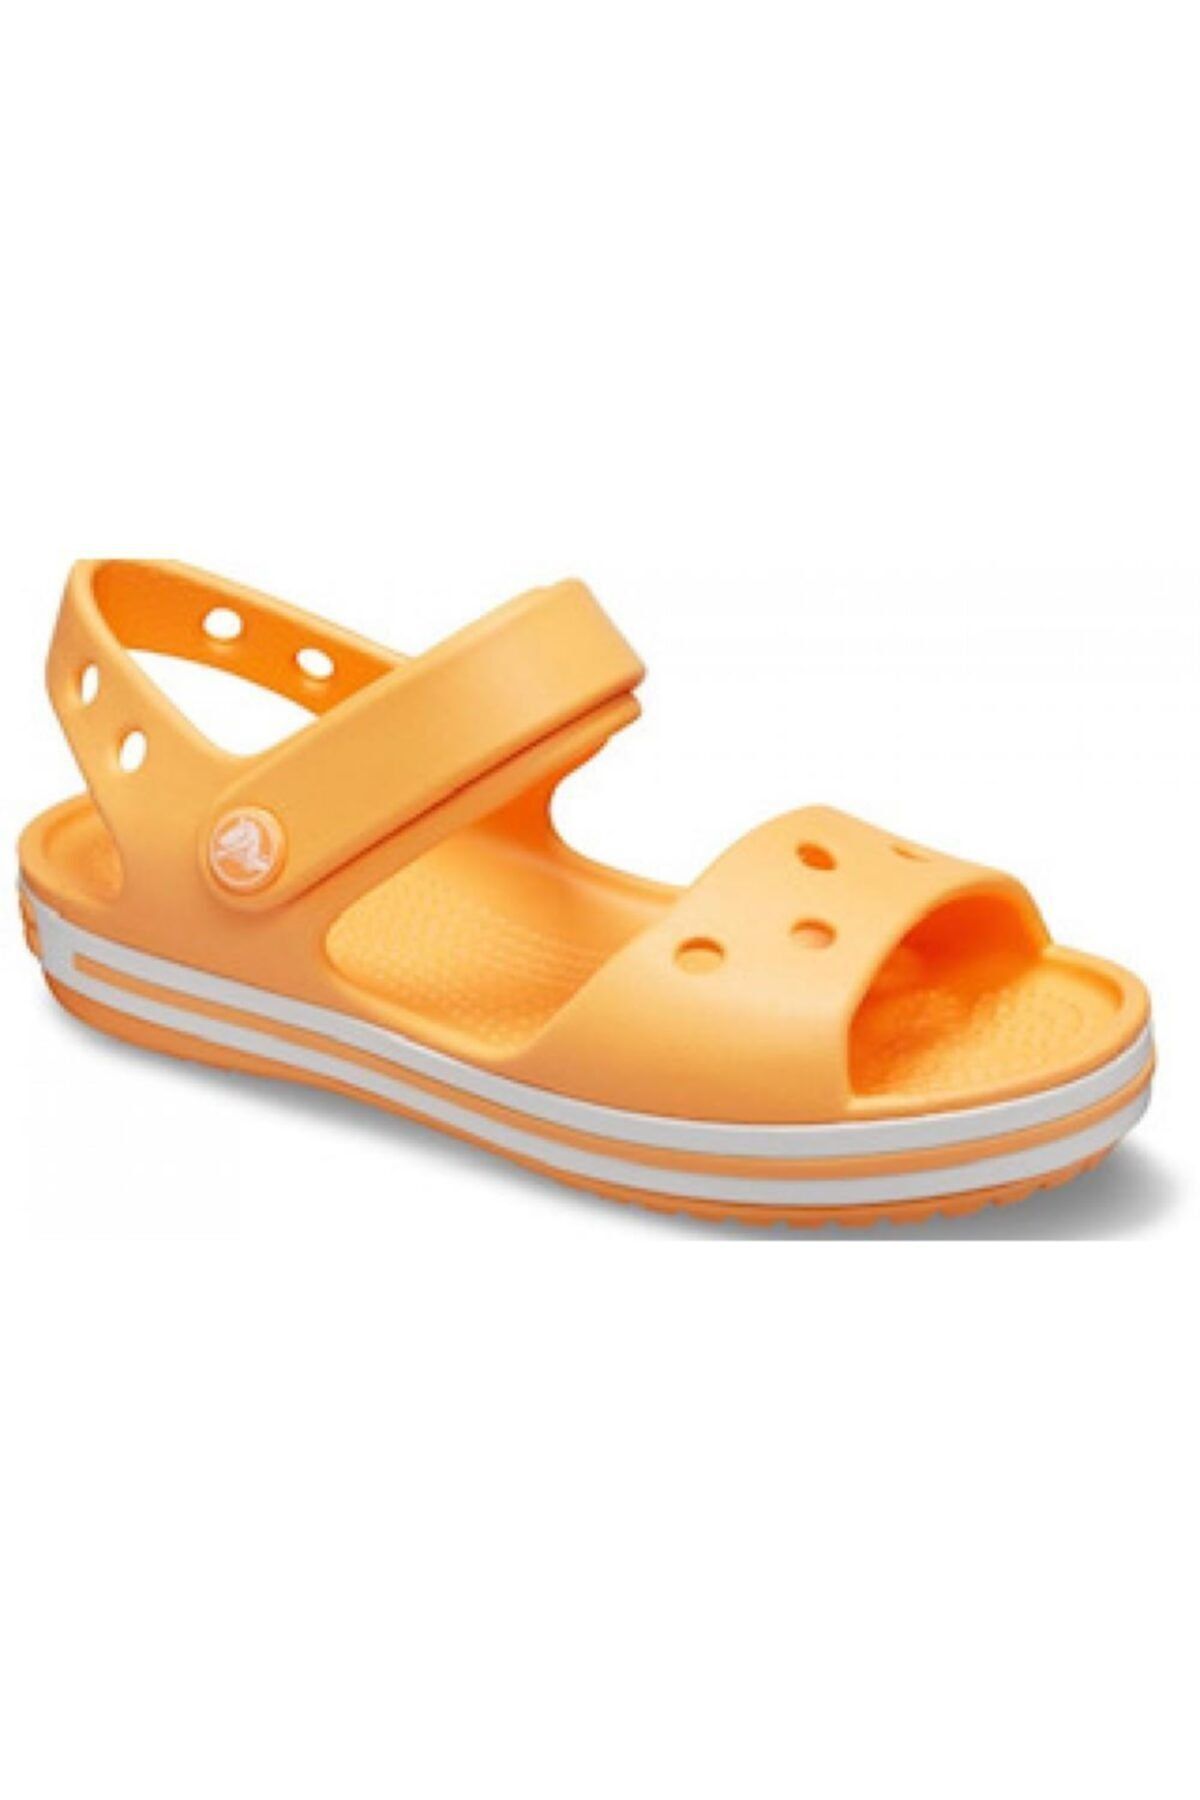 Crocs Crocband Çocuk Bebek Sandal Yazlık Terlik Sandalet-12856-801